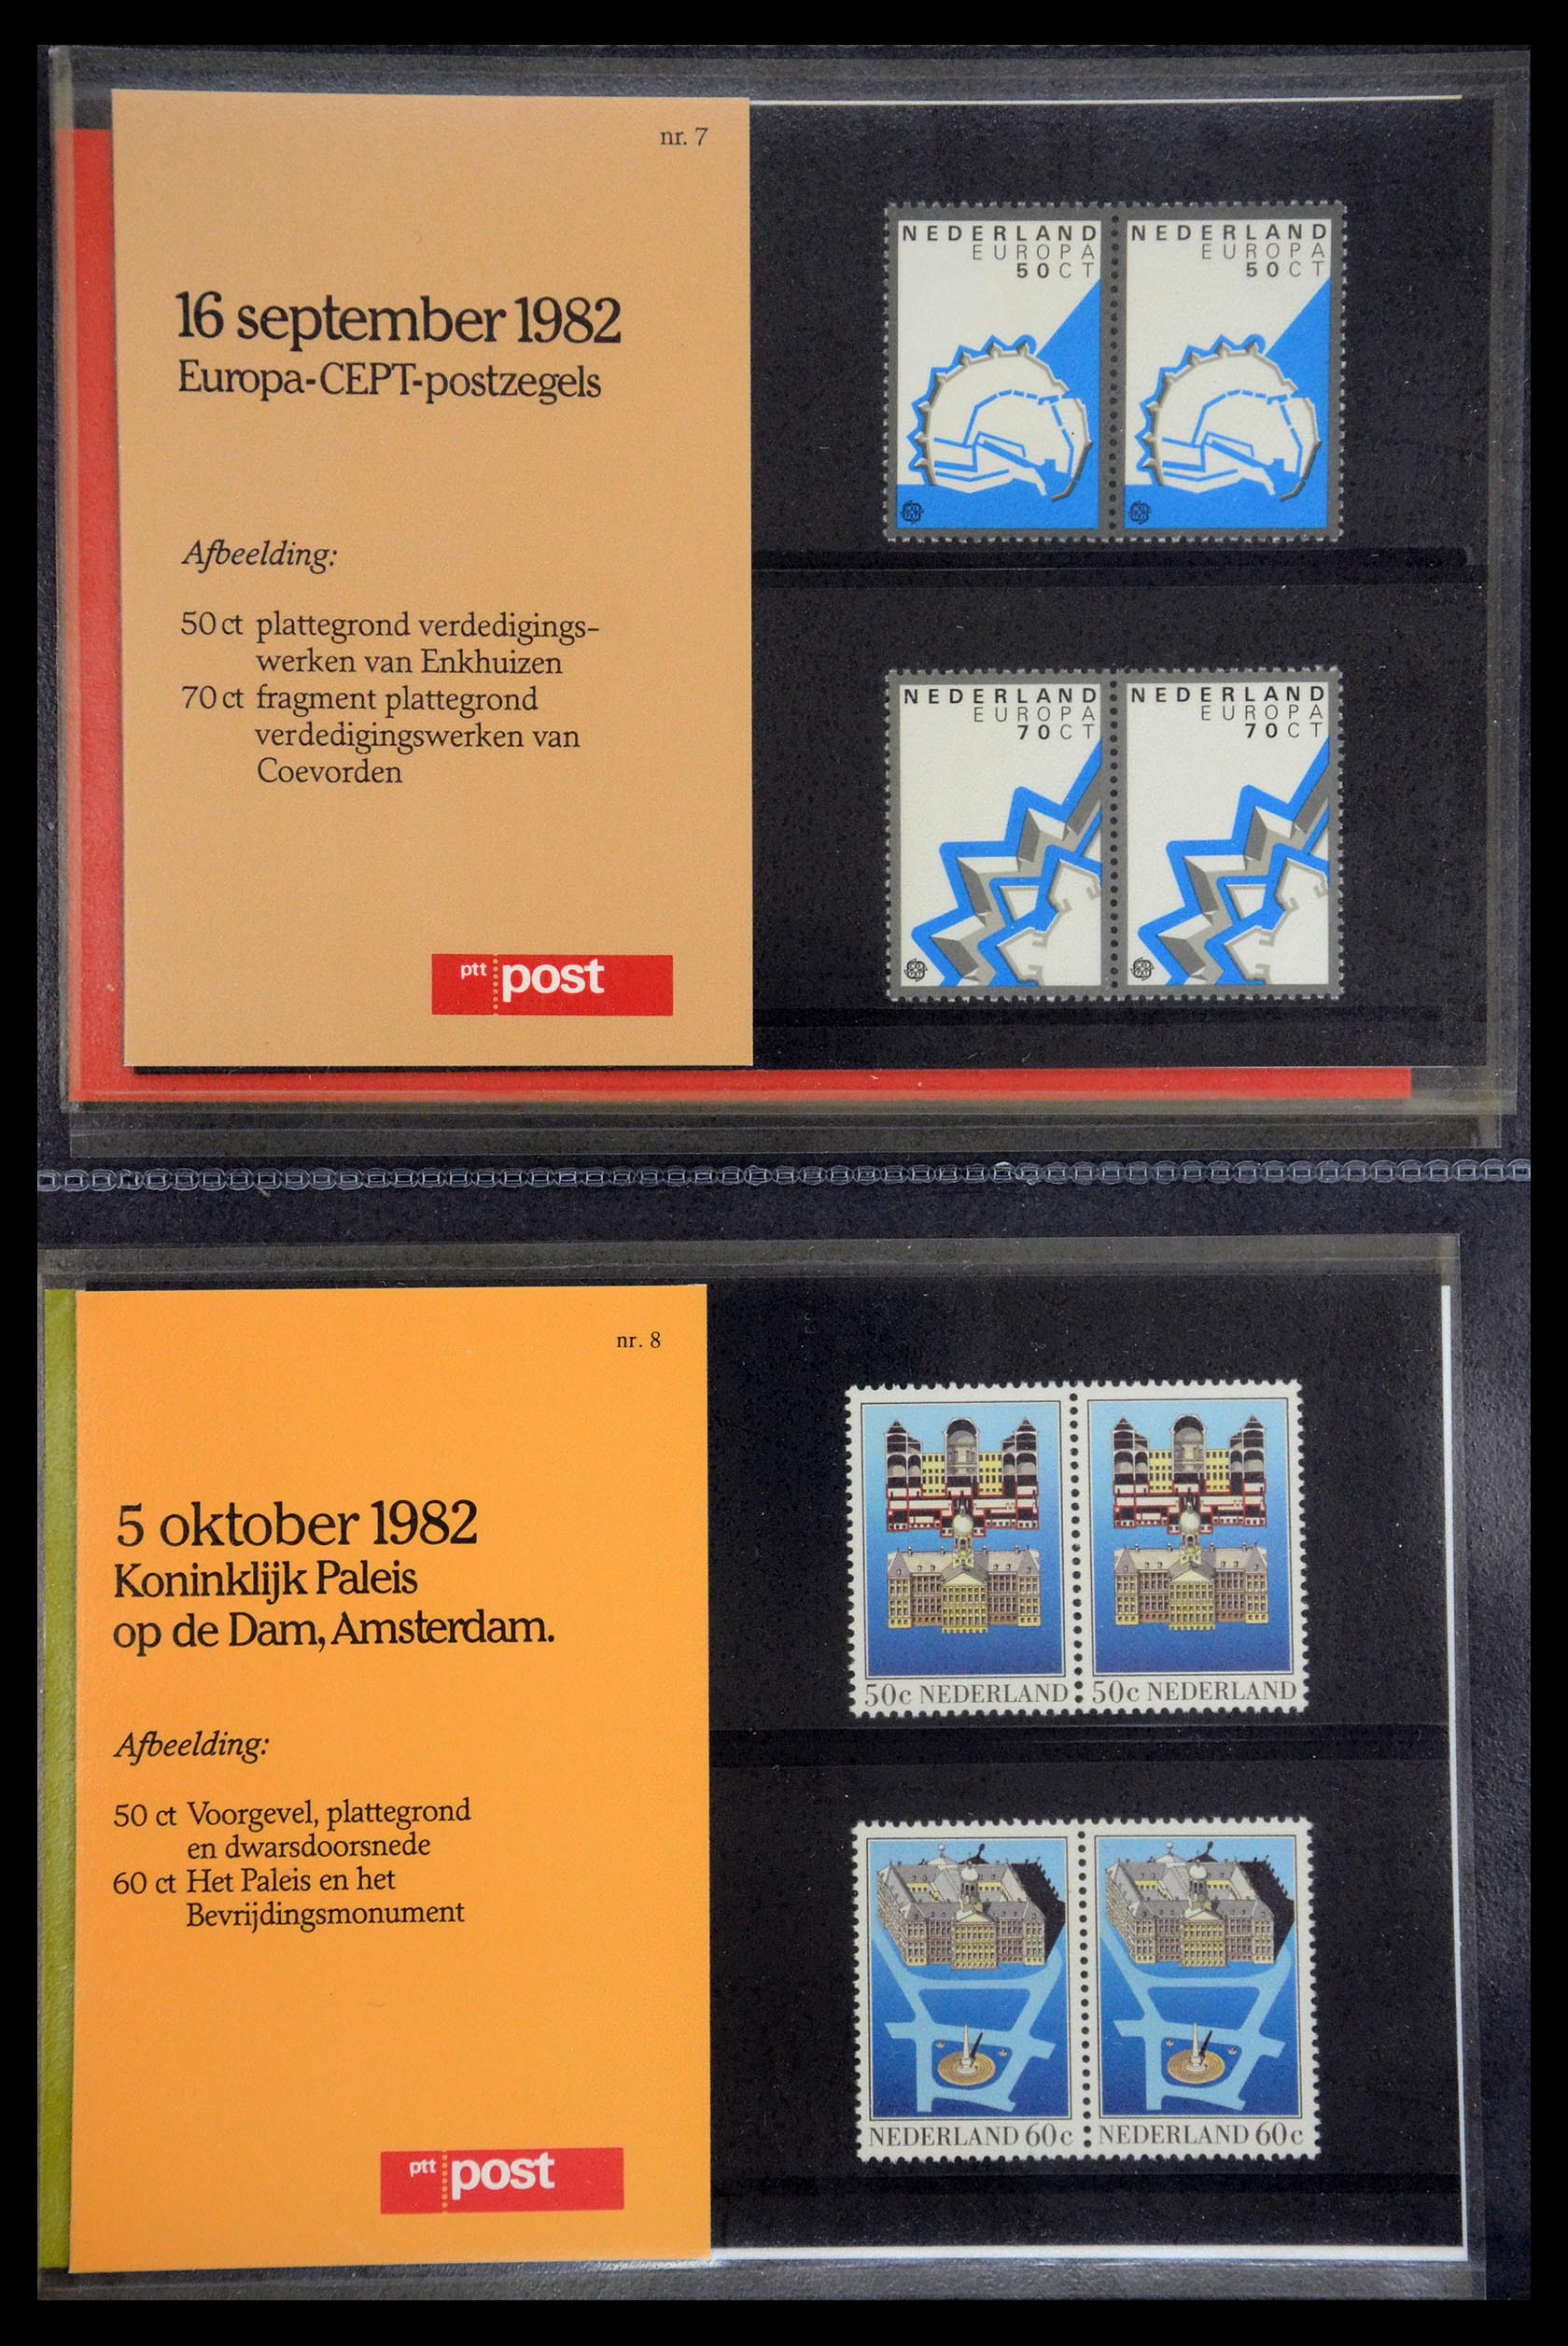 35187 004 - Stamp Collection 35187 Netherlands PTT presentation packs 1982-2019!